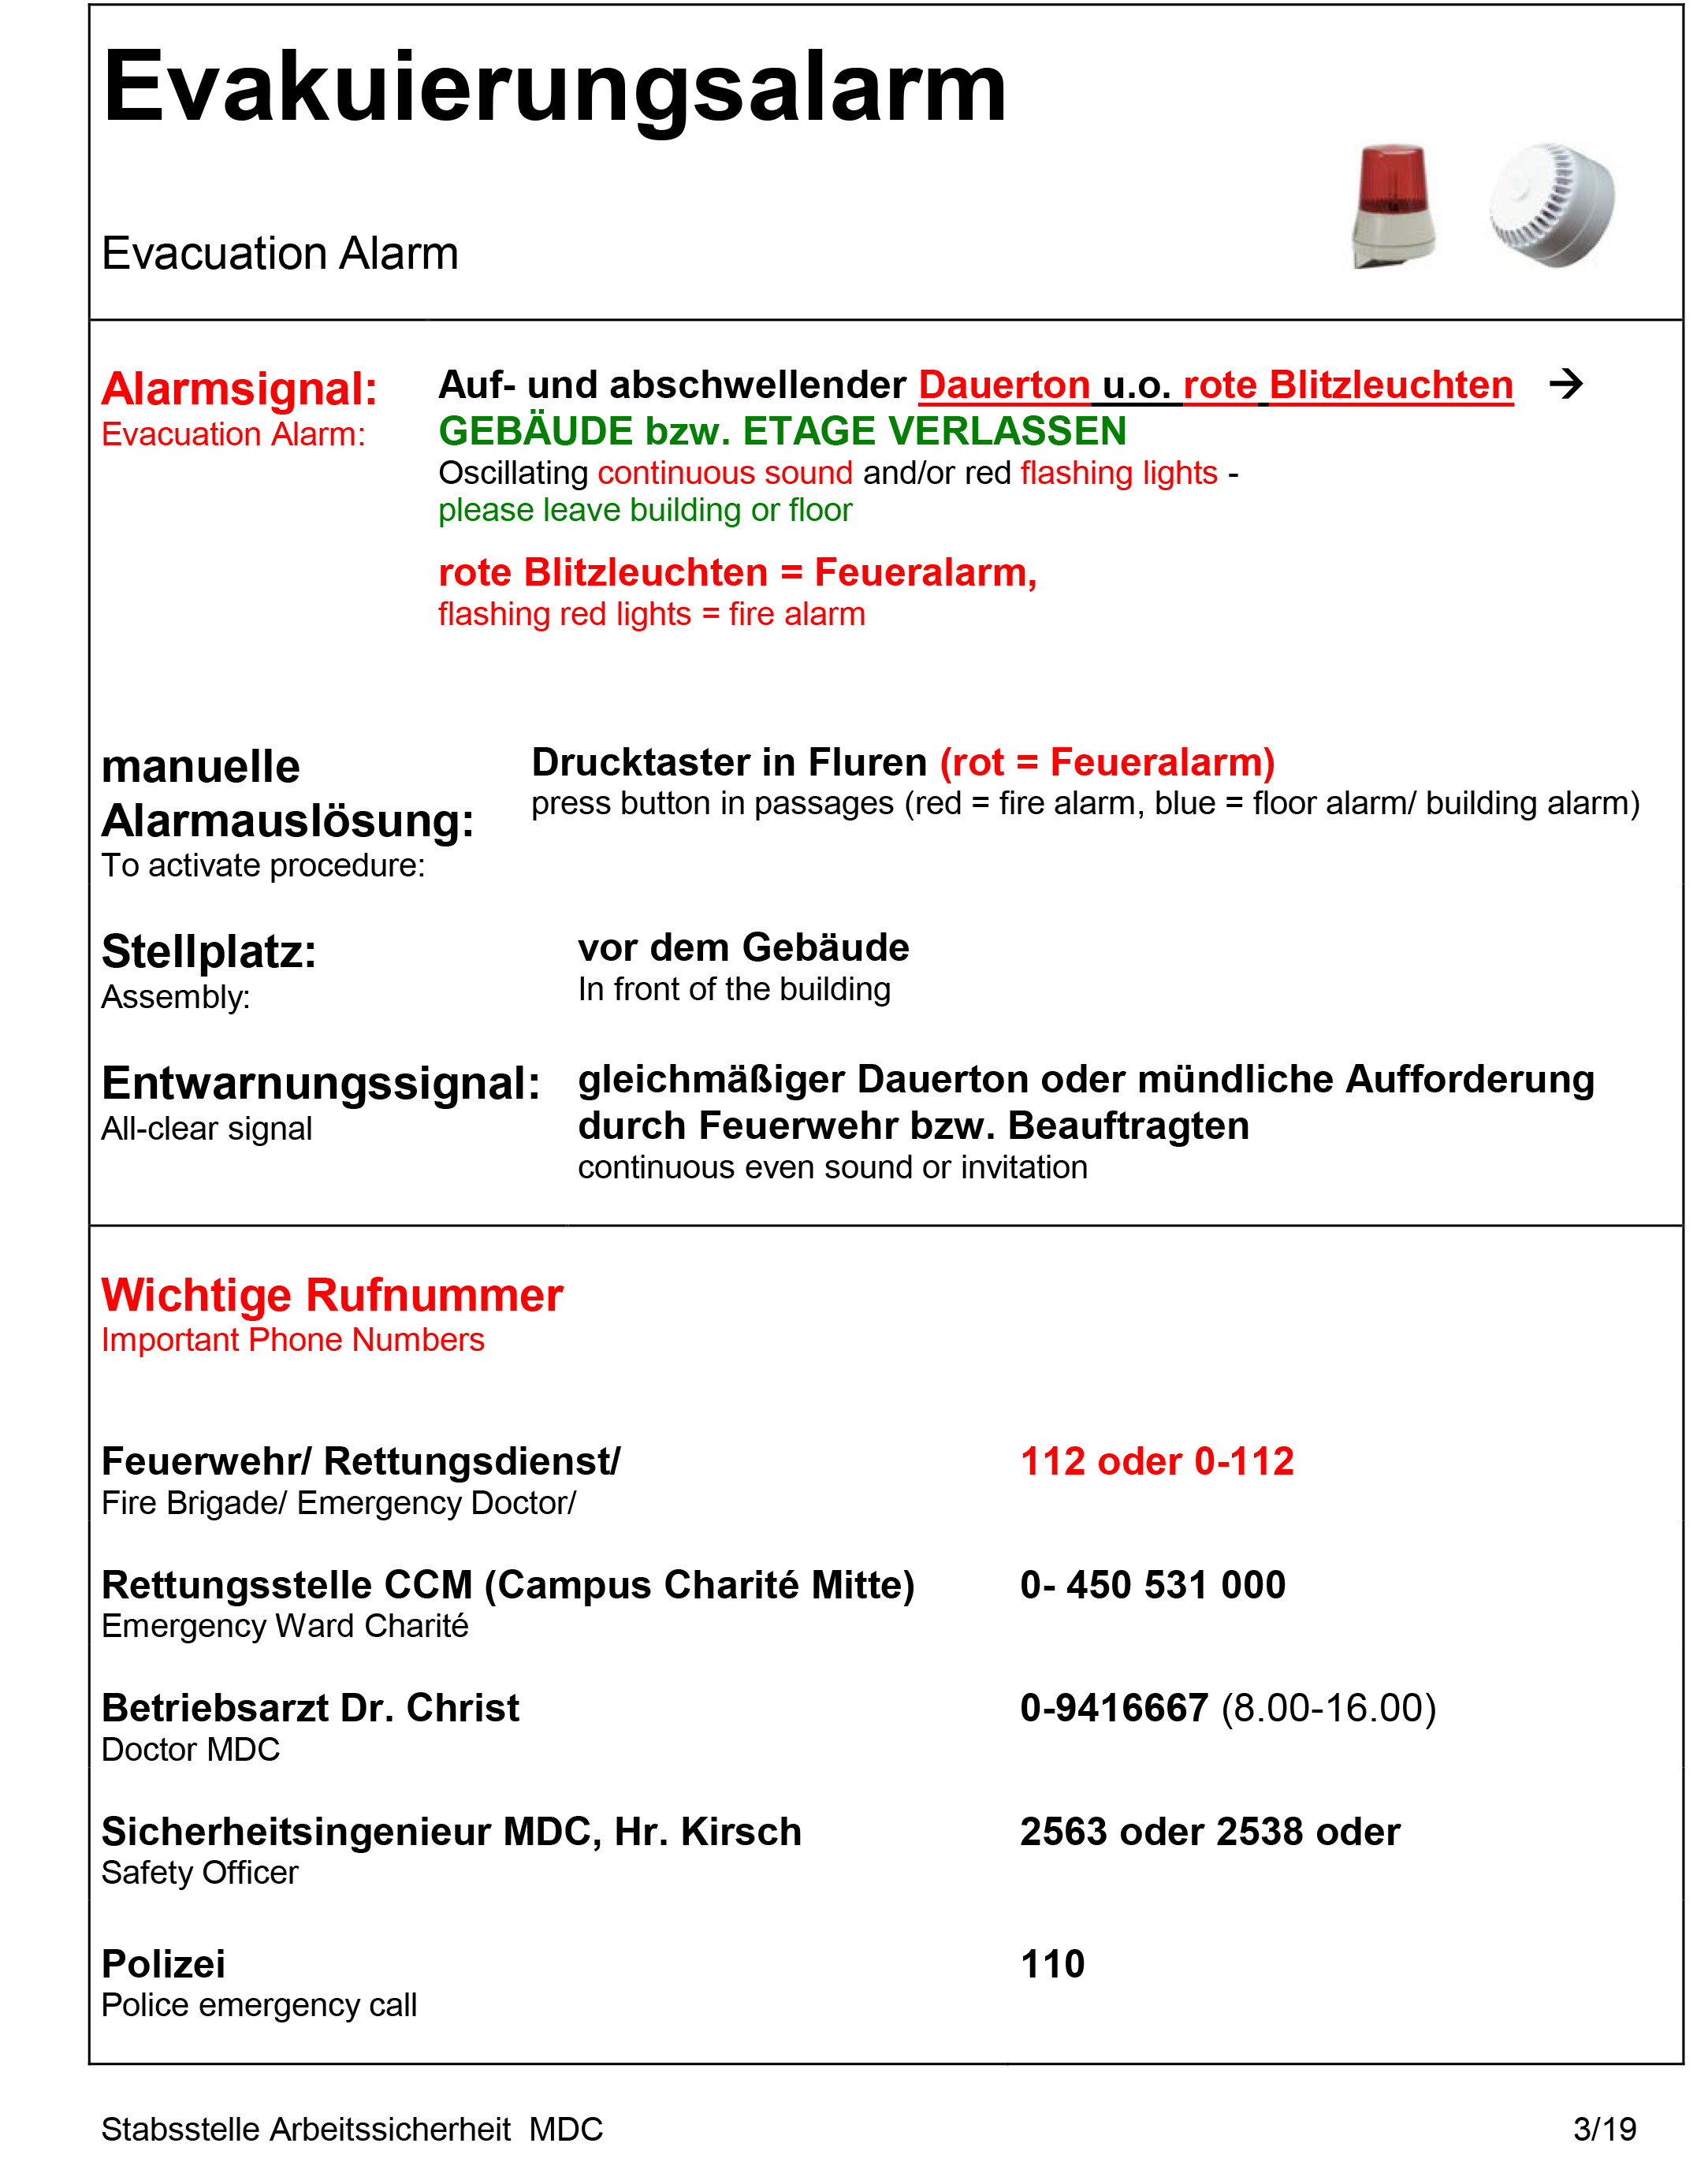 Anlagenkonvolut 2 für MDC Berlin-Mitte BIMSB Fremdfirmenrichtlinie